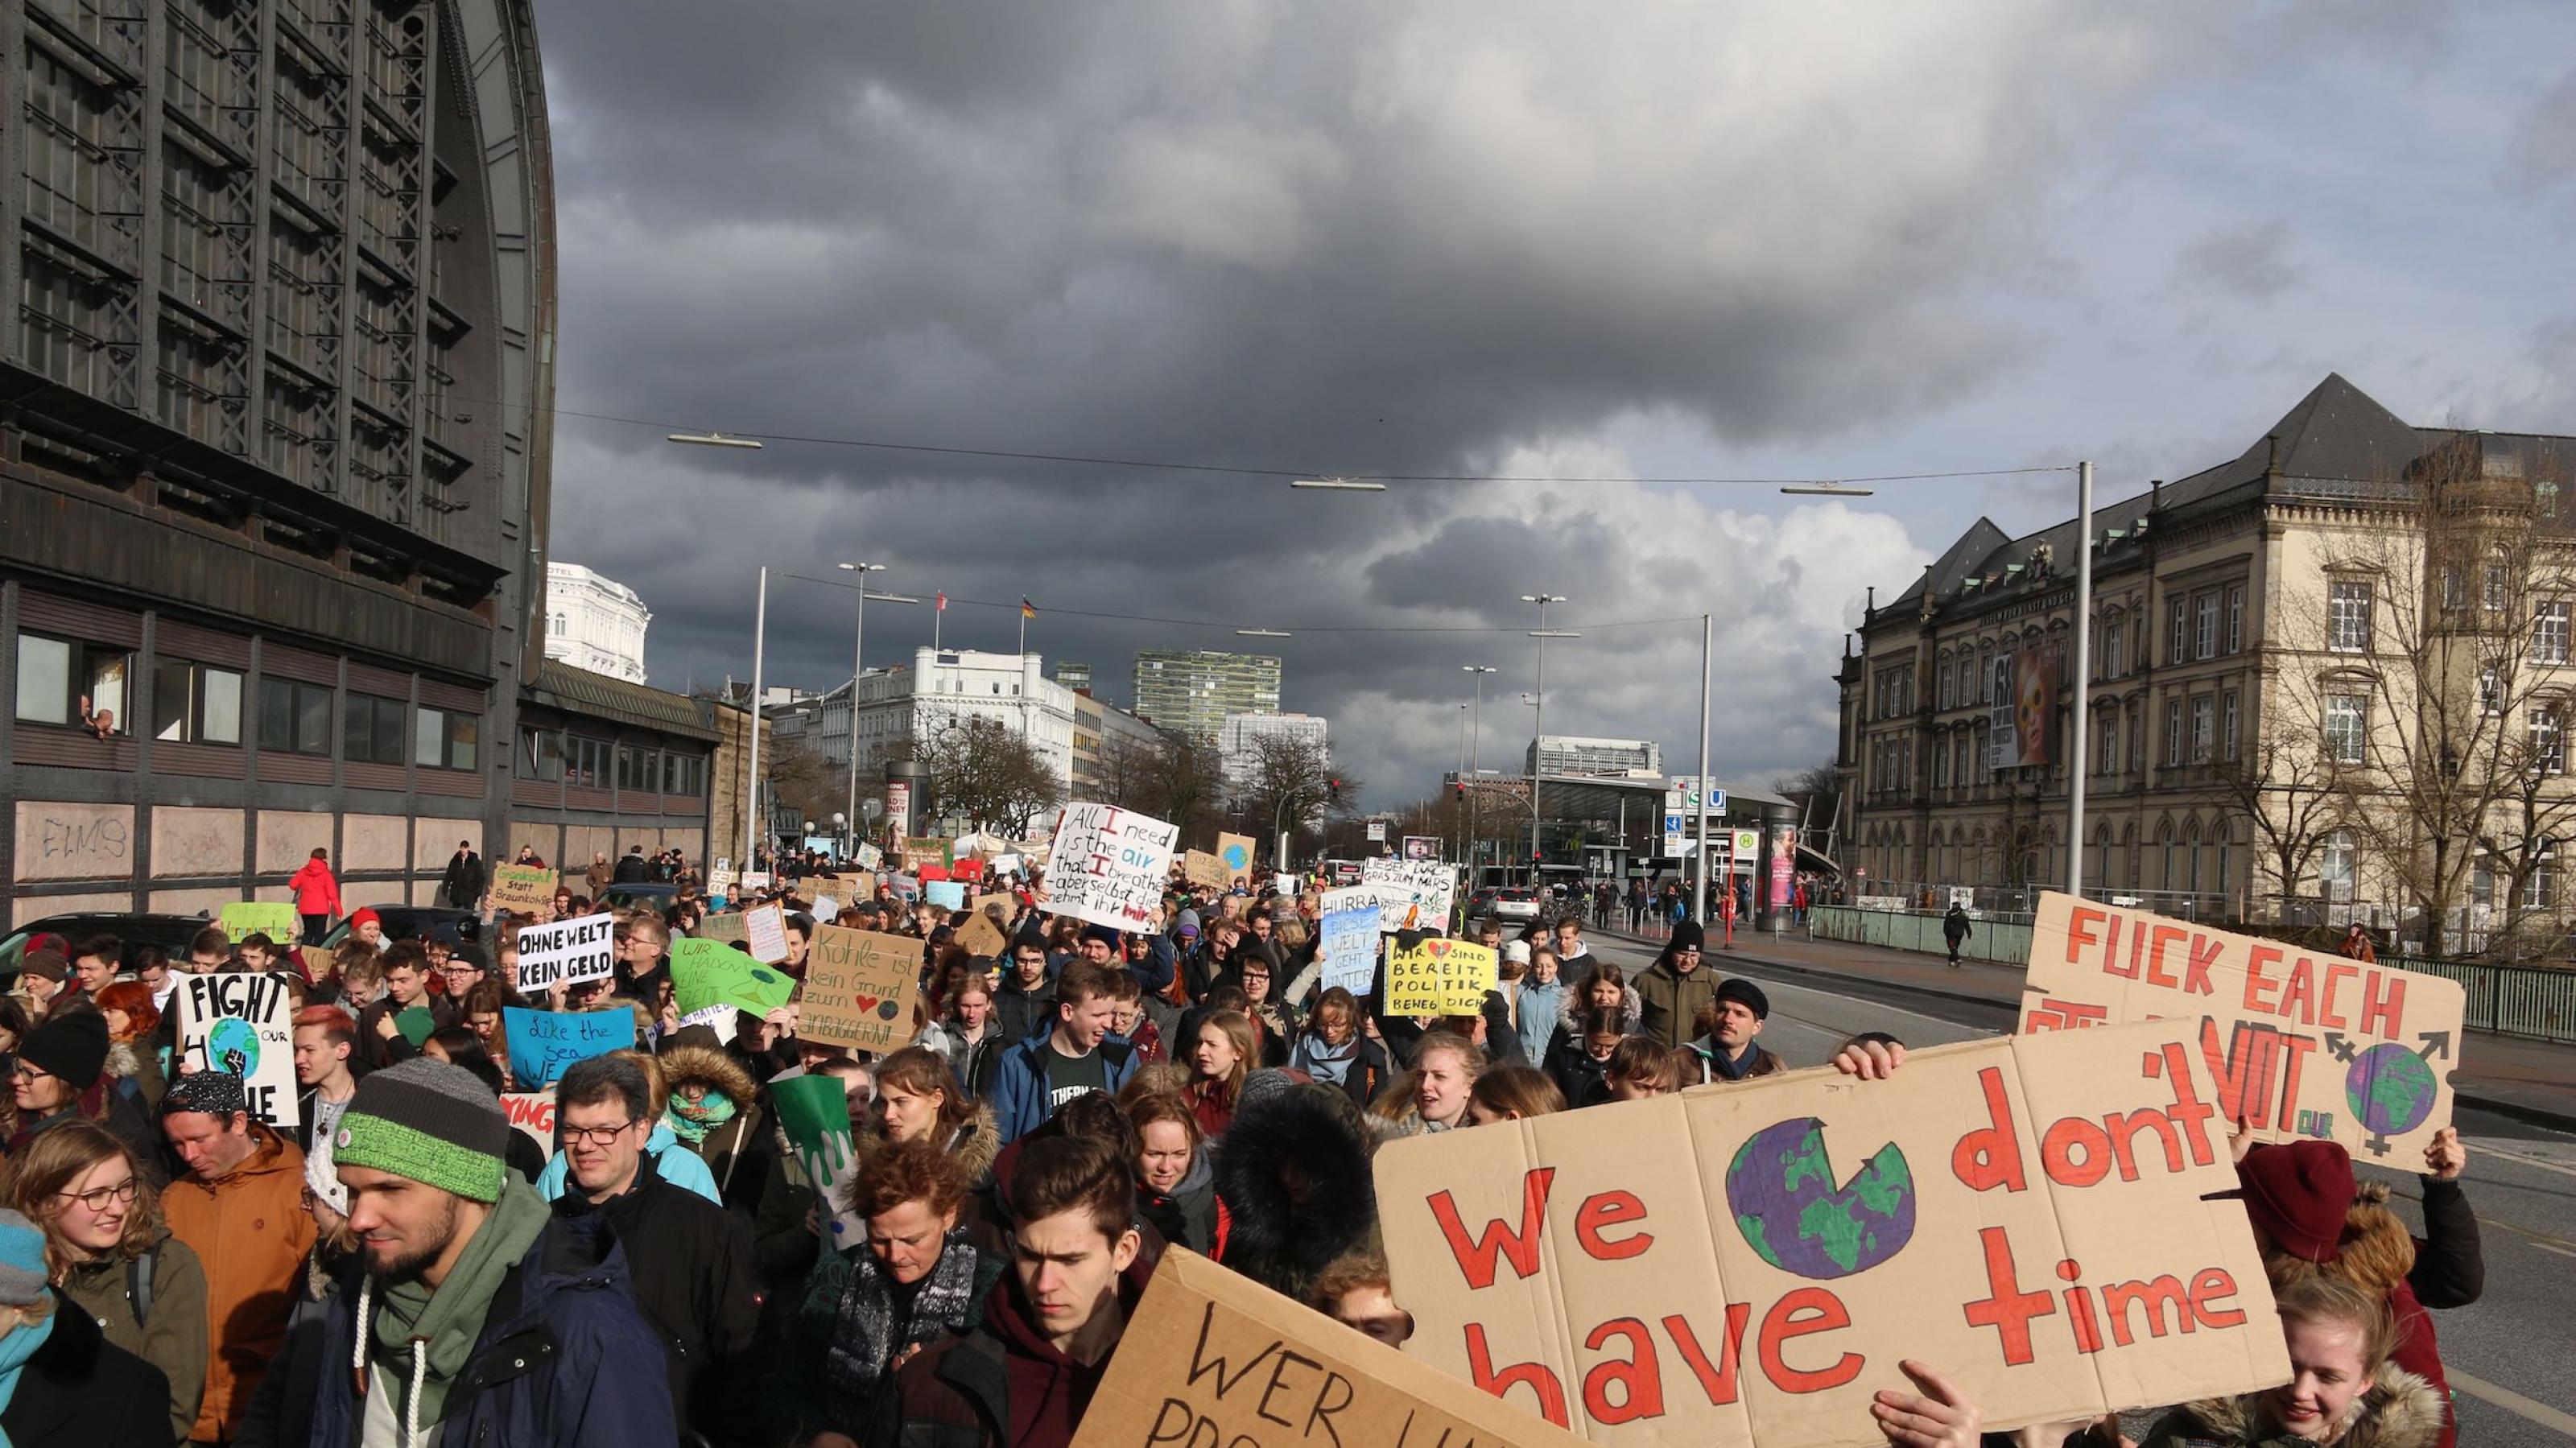 Schüler streiken für Klimaschutz am 15. März in Hamburg, einem Ferientag. Die Sonne scheint über dem Demonstrationszug, doch am Horizont sammeln sich dunkle Wolken.